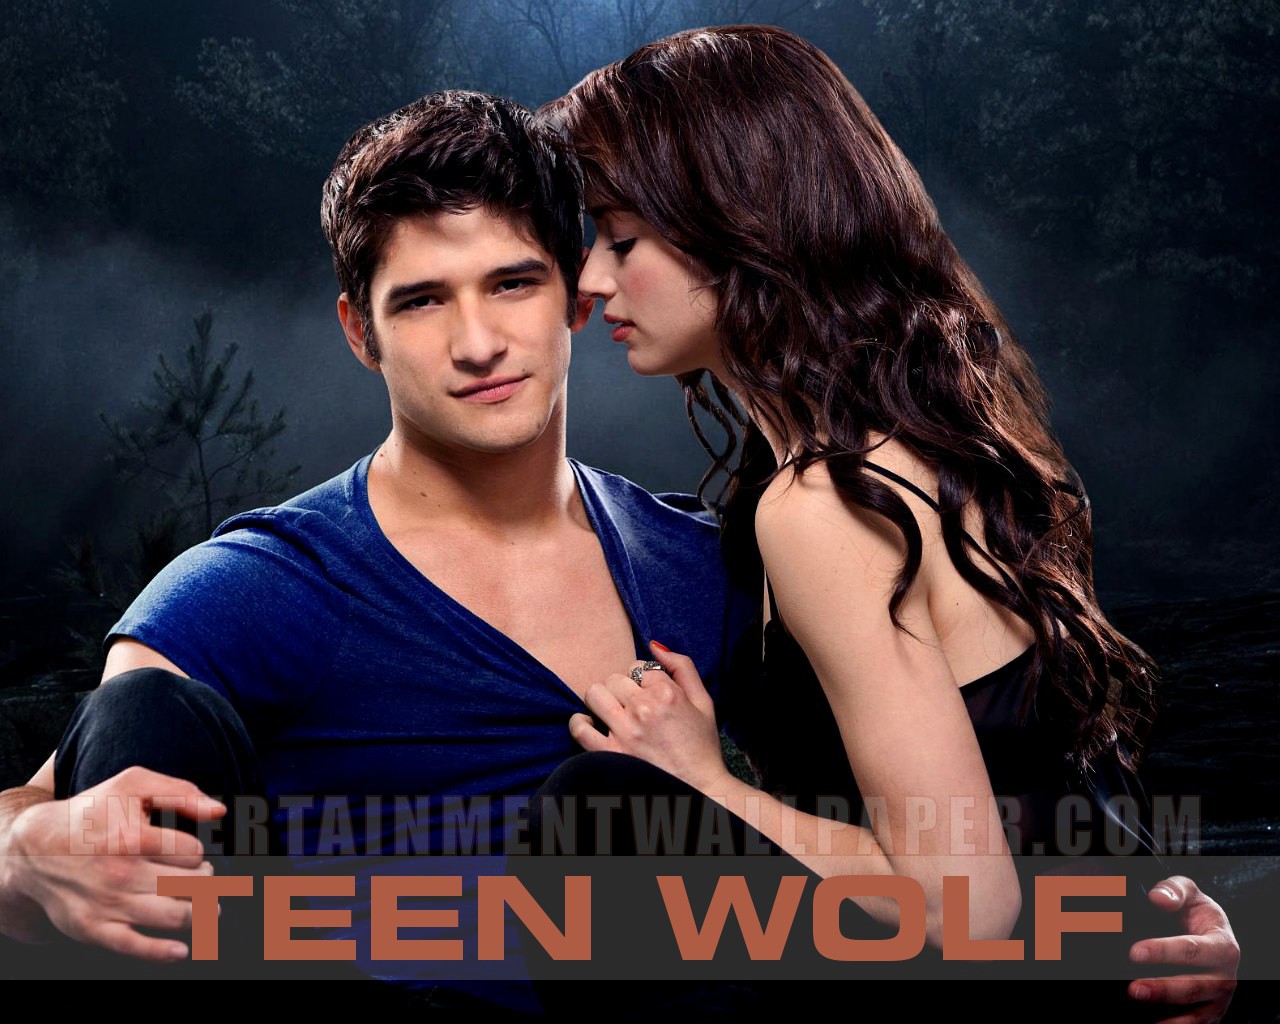 teen wolf - Teen Wolf Wallpaper (32707092) - Fanpop